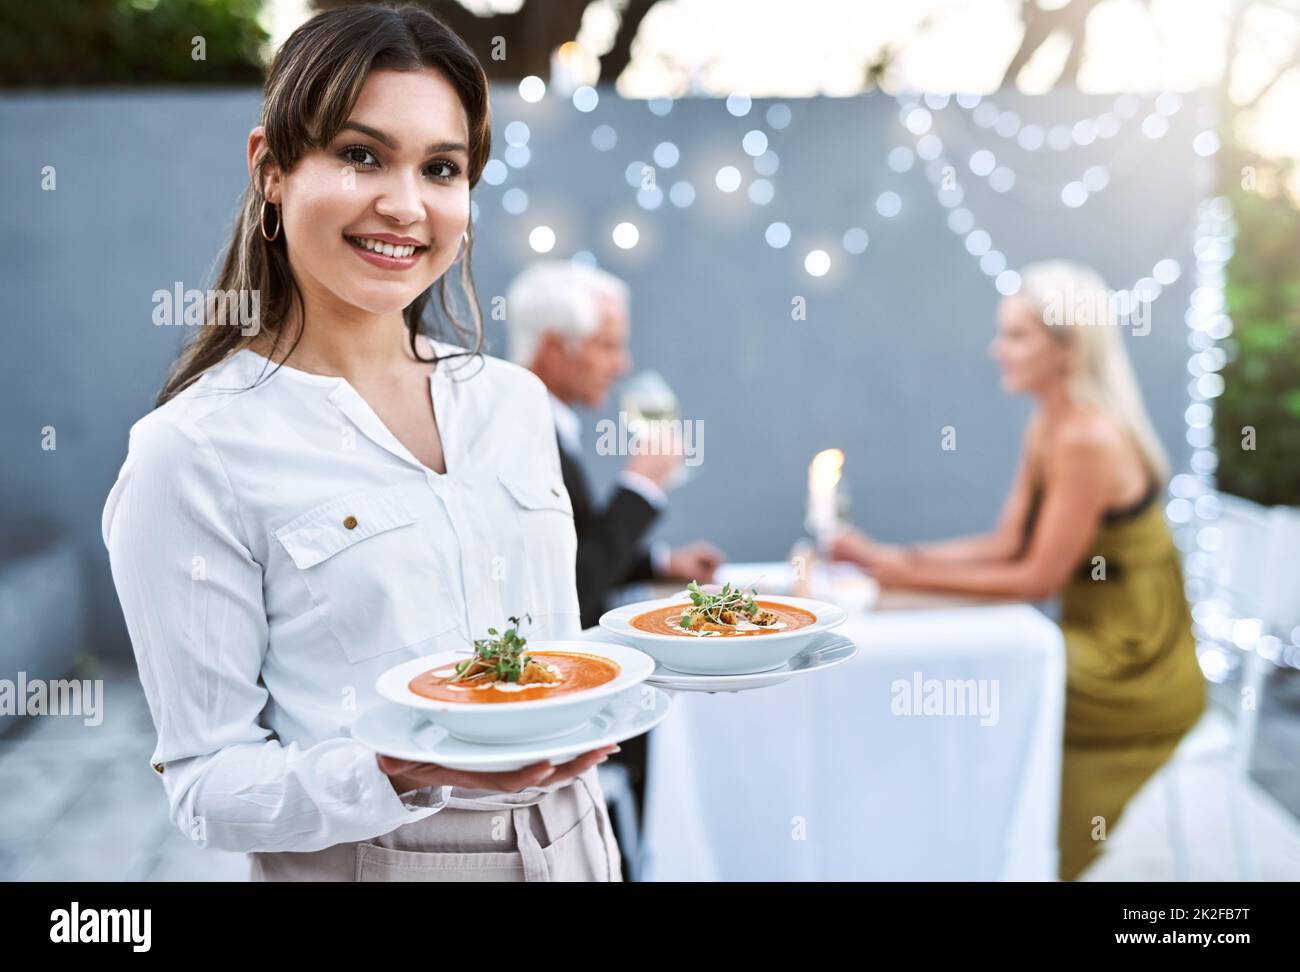 Sie werden diese Vorspeisen lieben. Aufnahme einer jungen Kellnerin, die ein reifes Paar zu einem romantischen Date serviert. Stockfoto